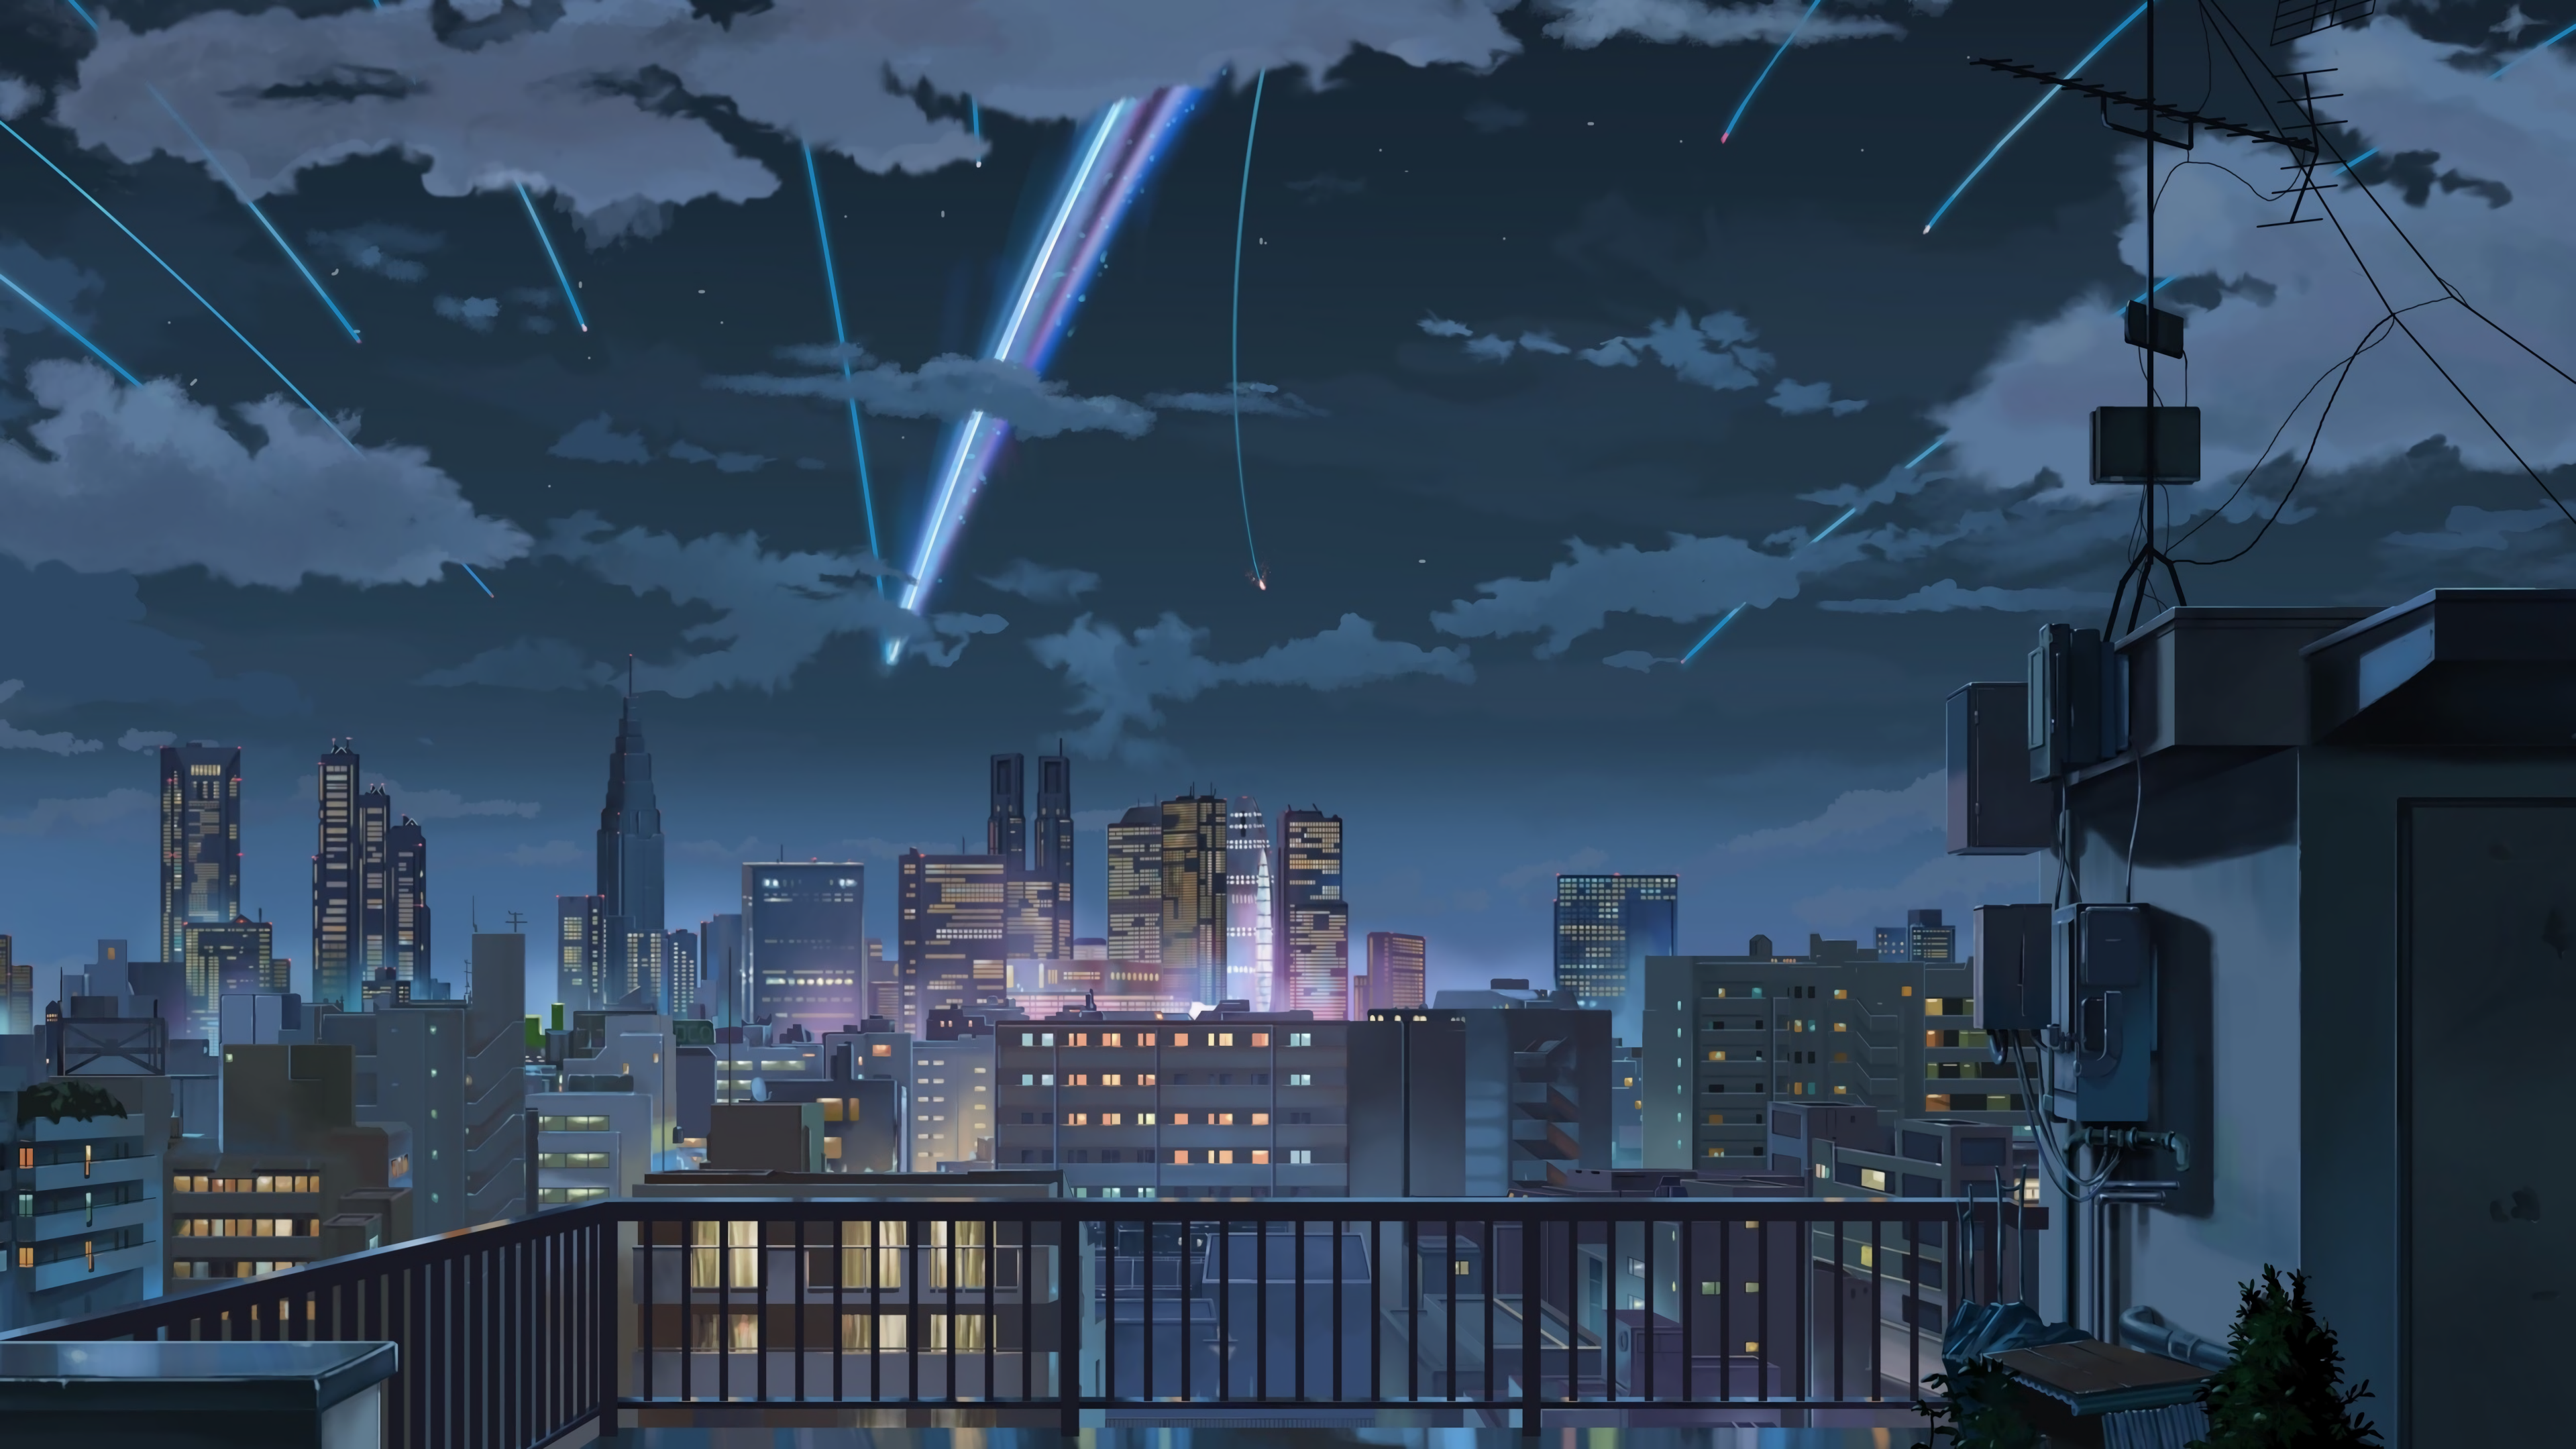 50+ Background Anime Đẹp, Ấn Tượng, Nhiều Chủ Đề